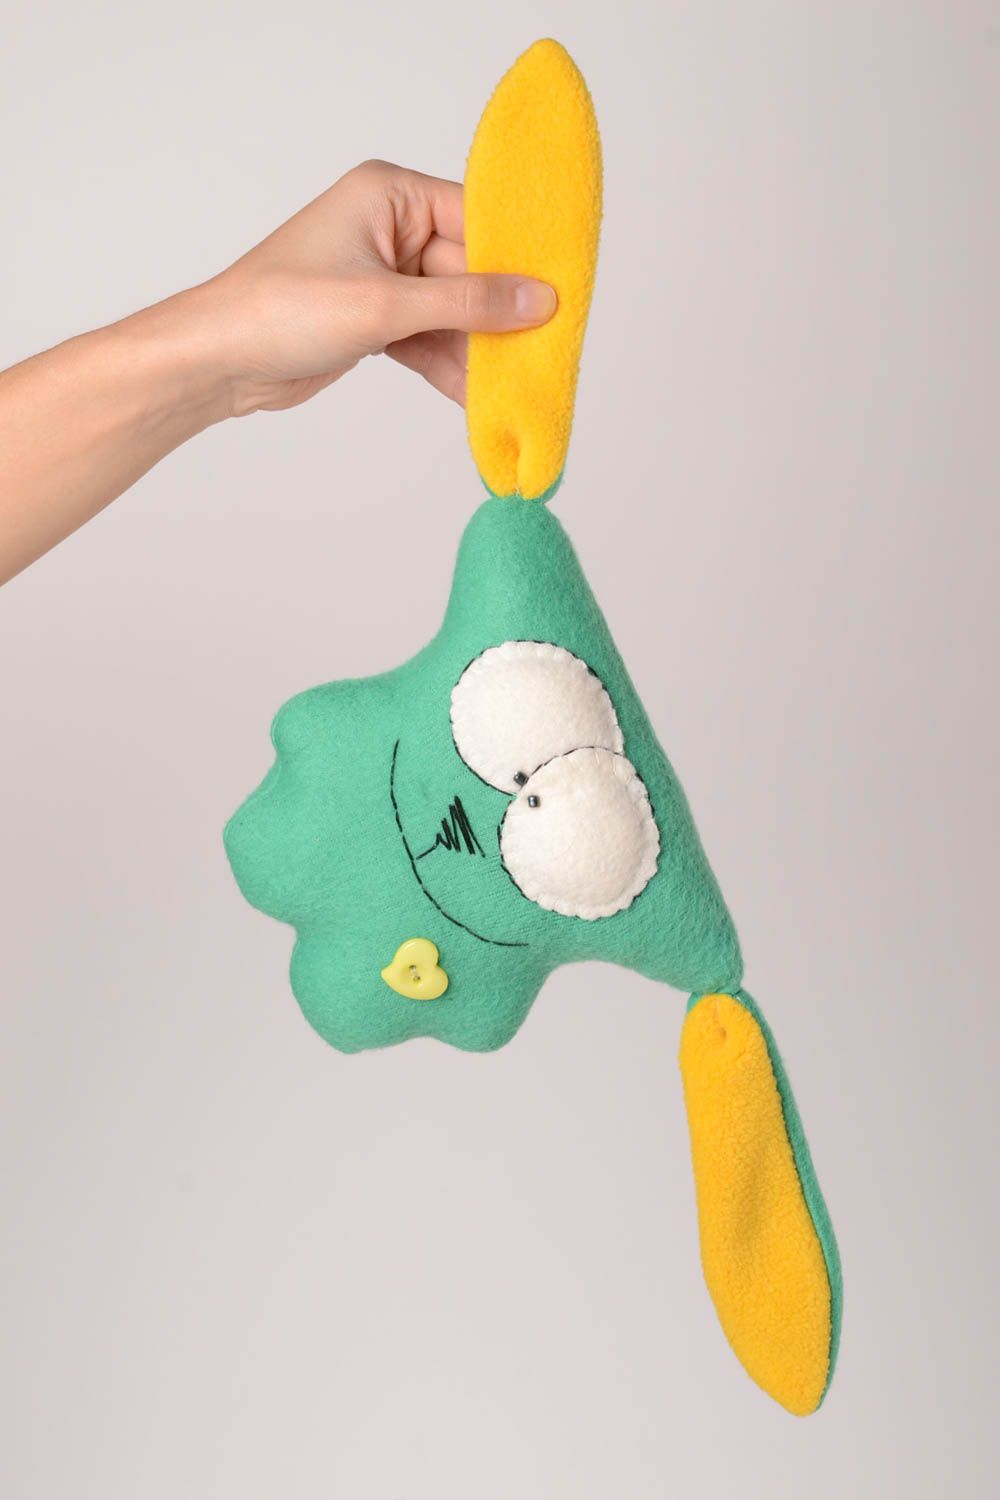 Детская игрушка ручной работы игрушка из флиса мягкая игрушка зеленый заяц яркий фото 2